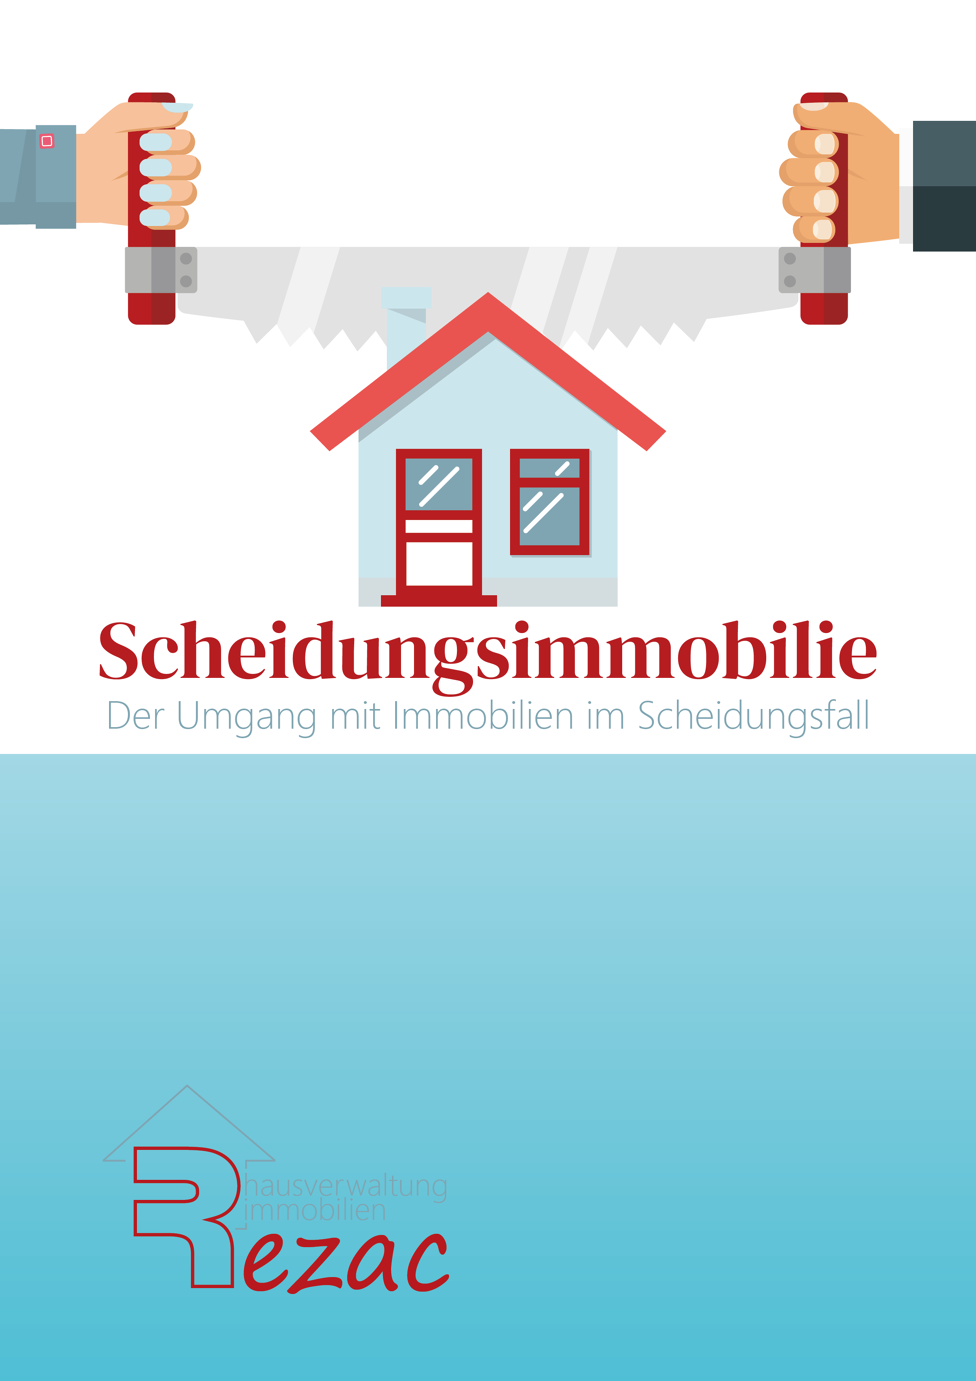 Coverbild des E-Books 'Scheidungsimmobilien - Der Umgang mit Immobilien im Scheidungsfall' von Rezac